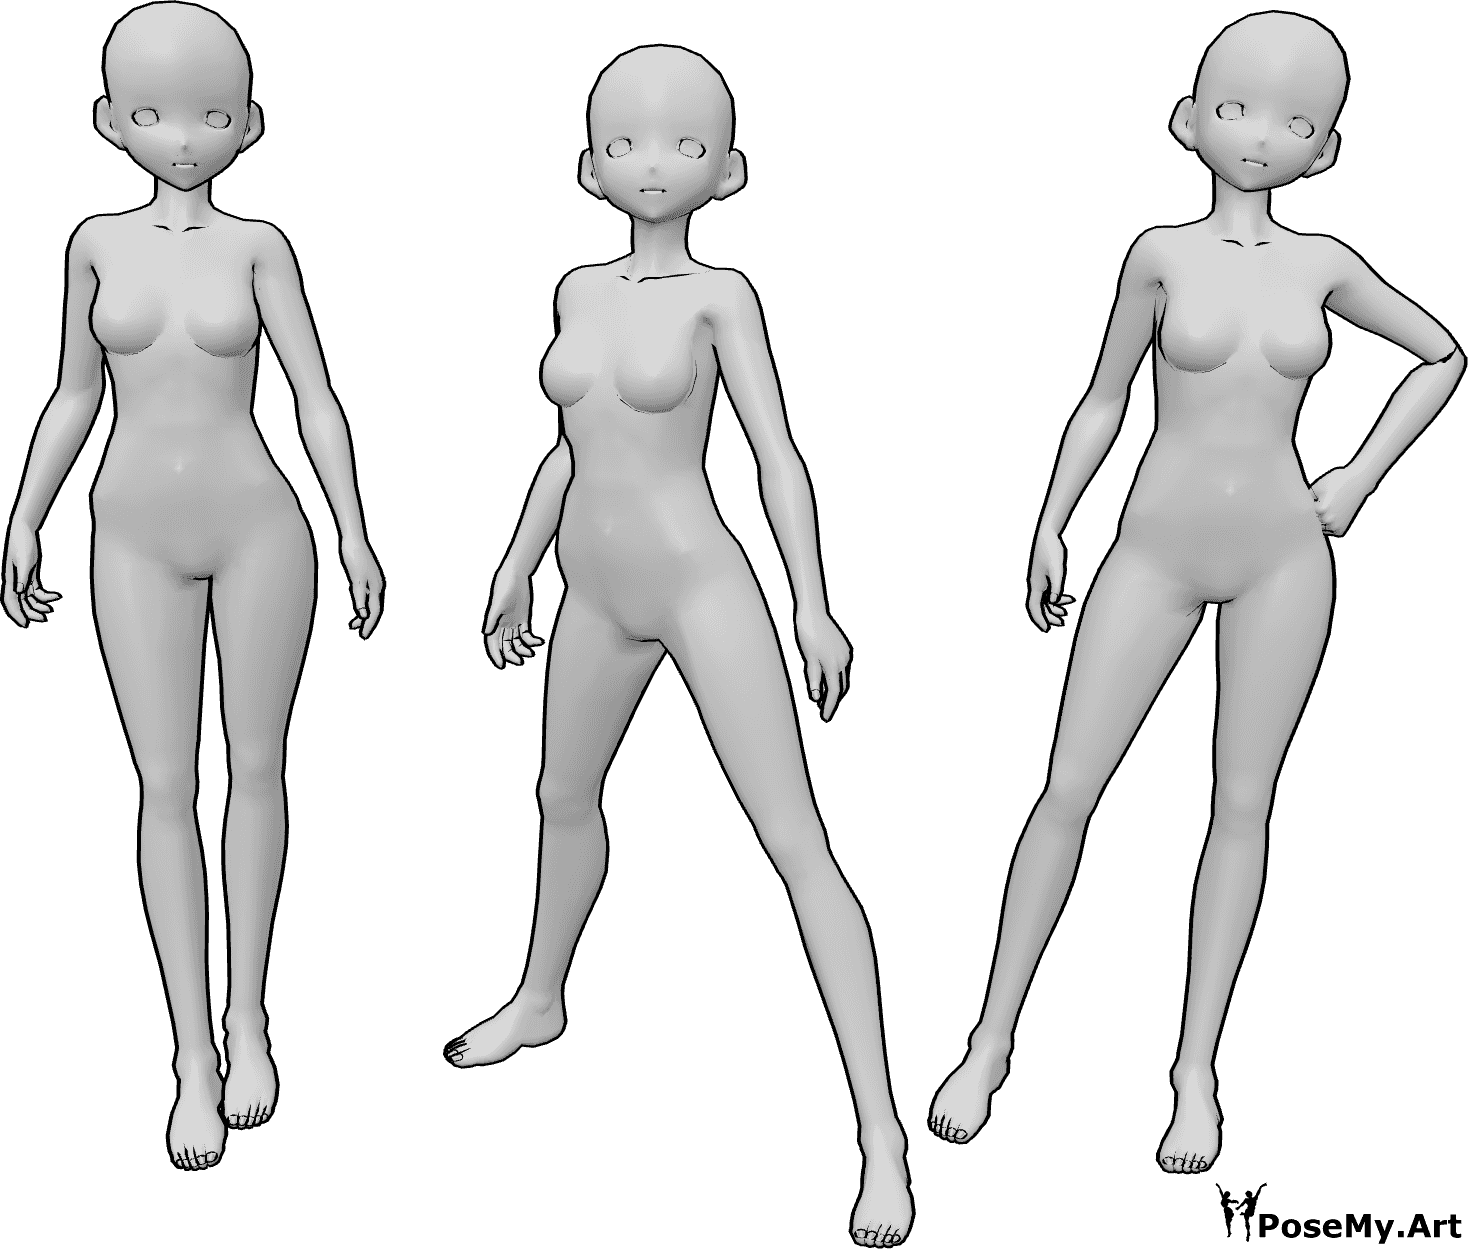 Posen-Referenz- Drei Anime-Frauen posieren - Drei Anime-Frauen stehen und posieren selbstbewusst, wie Models